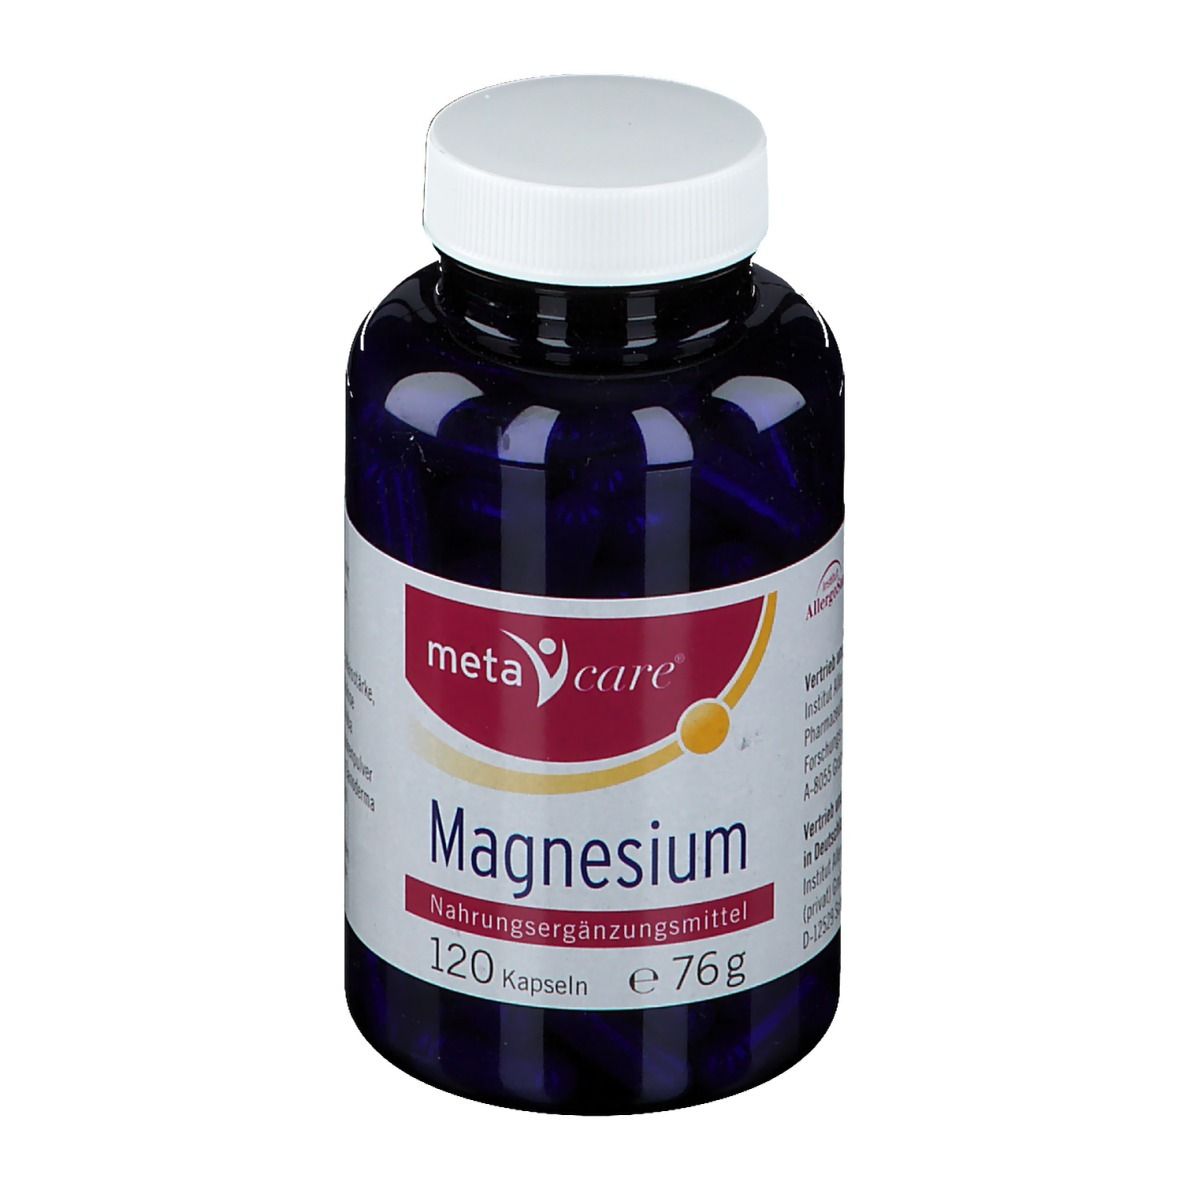 metacare® Magnesium